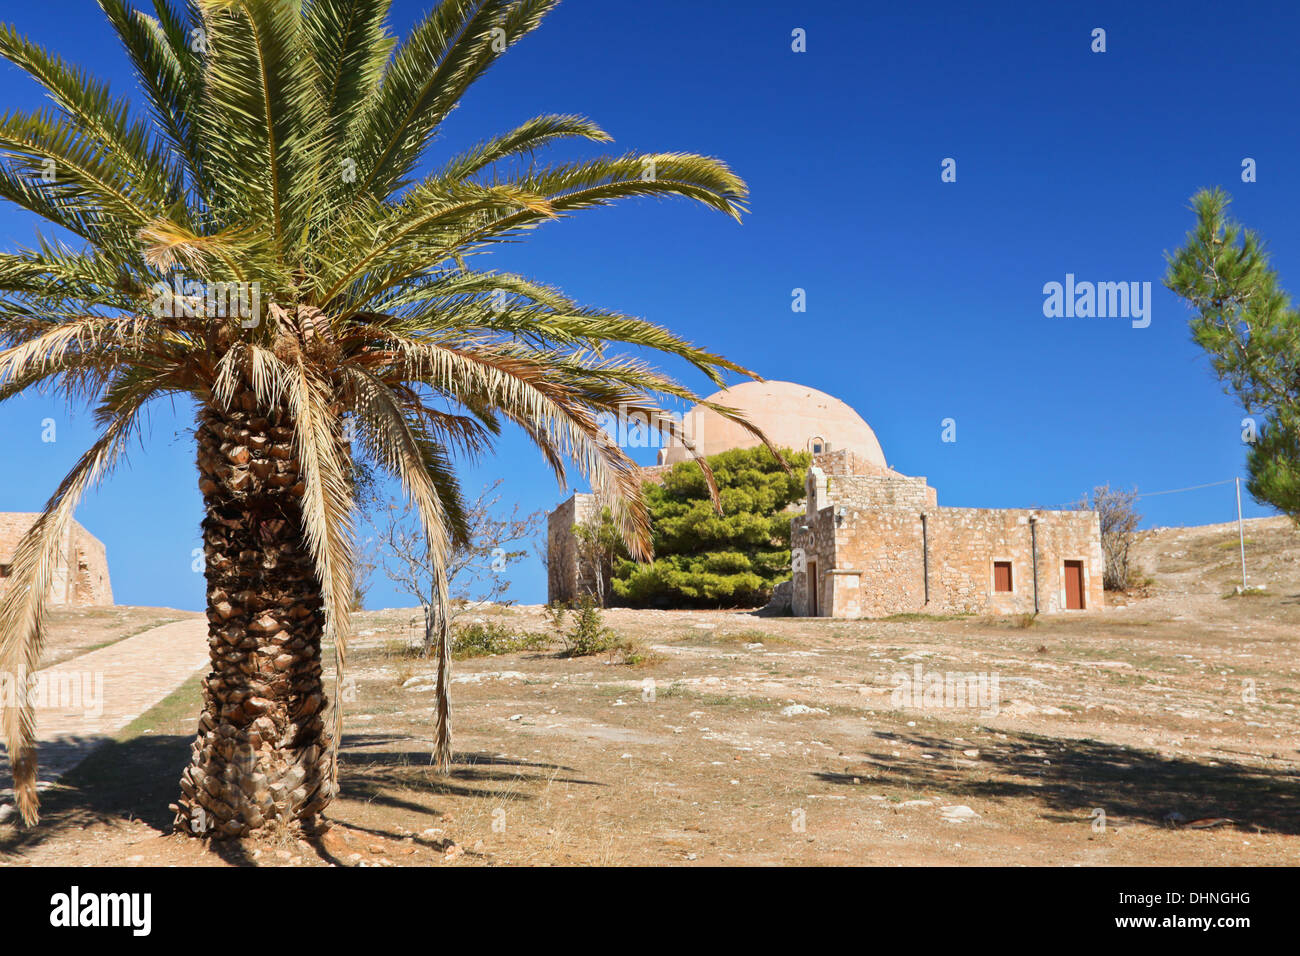 Moschea del Sultano Ibrahim Han all'interno della fortezza veneziana, Palekastro, Regione di Rethimno, sull'isola di Creta, Grecia. Foto Stock